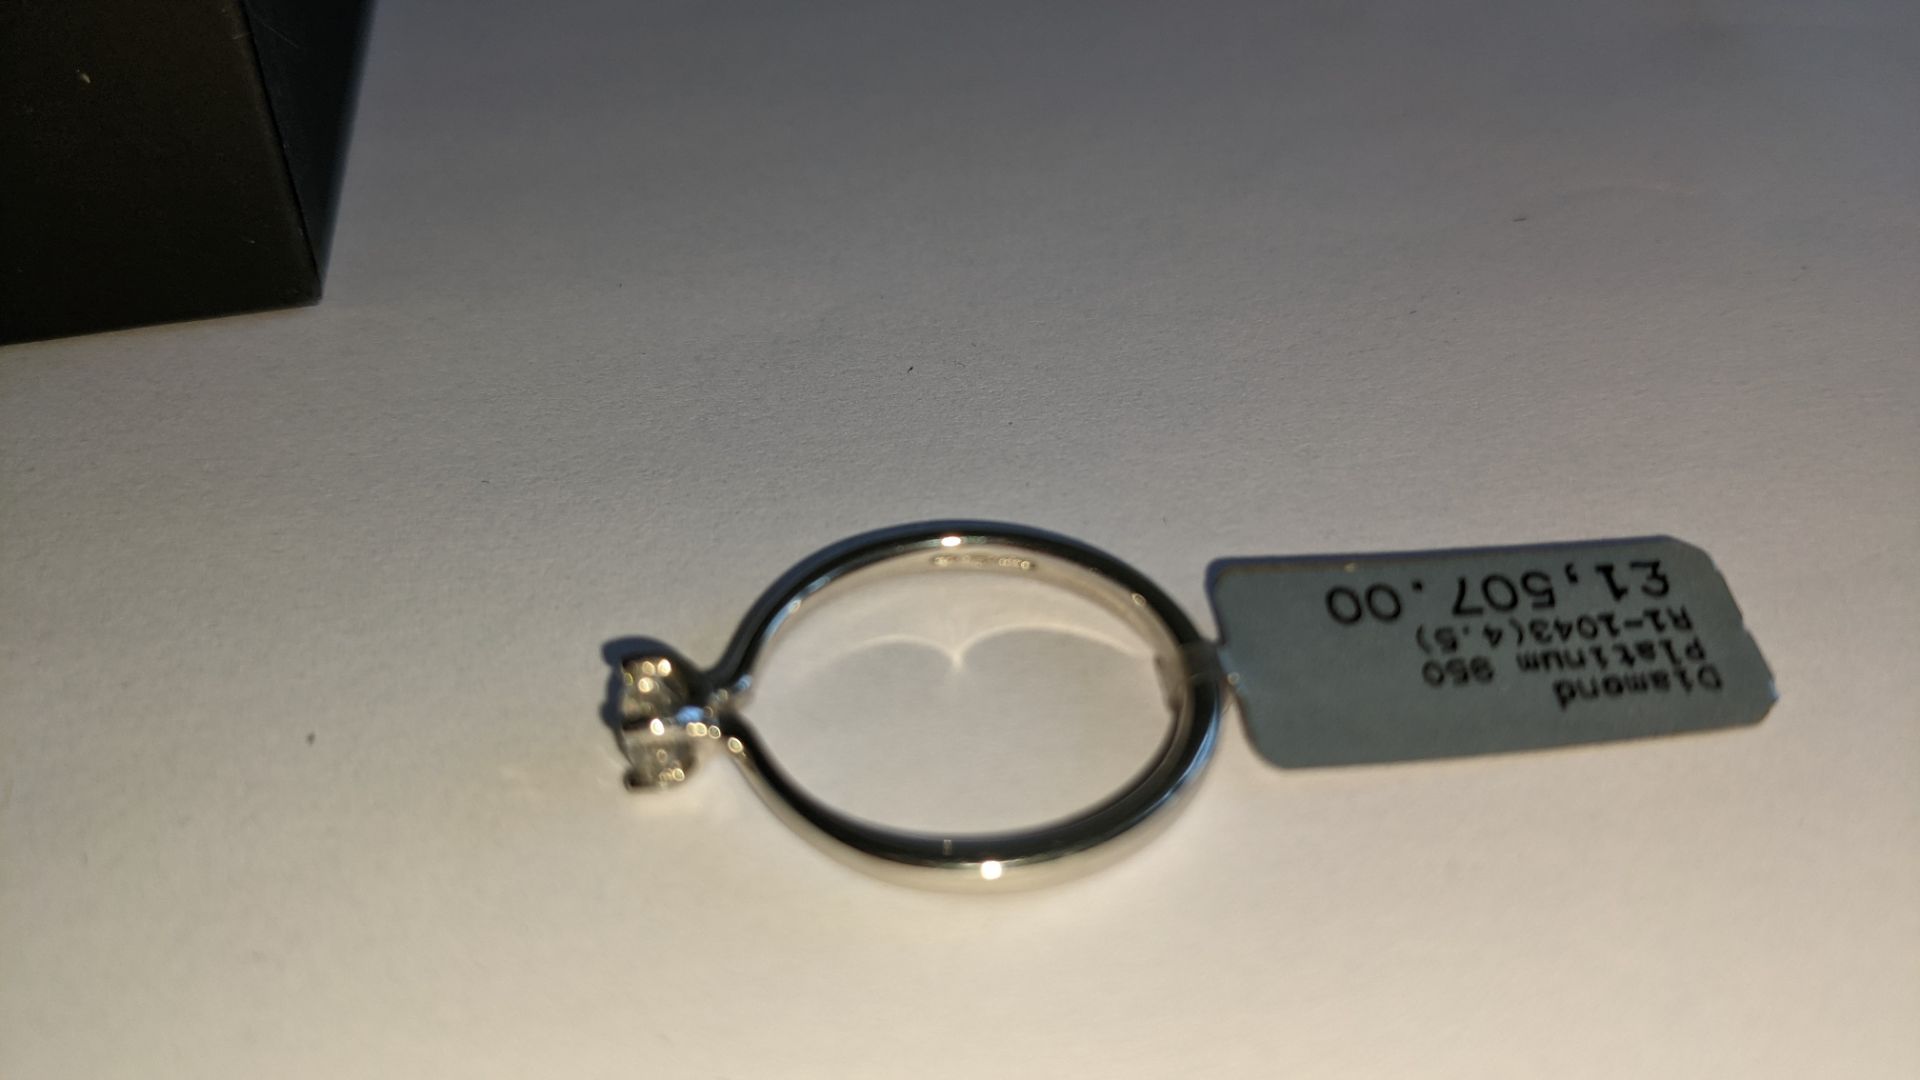 Single stone diamond & platinum 950 ring with 0.35ct H/Si diamond, RRP £1,507 - Image 15 of 29